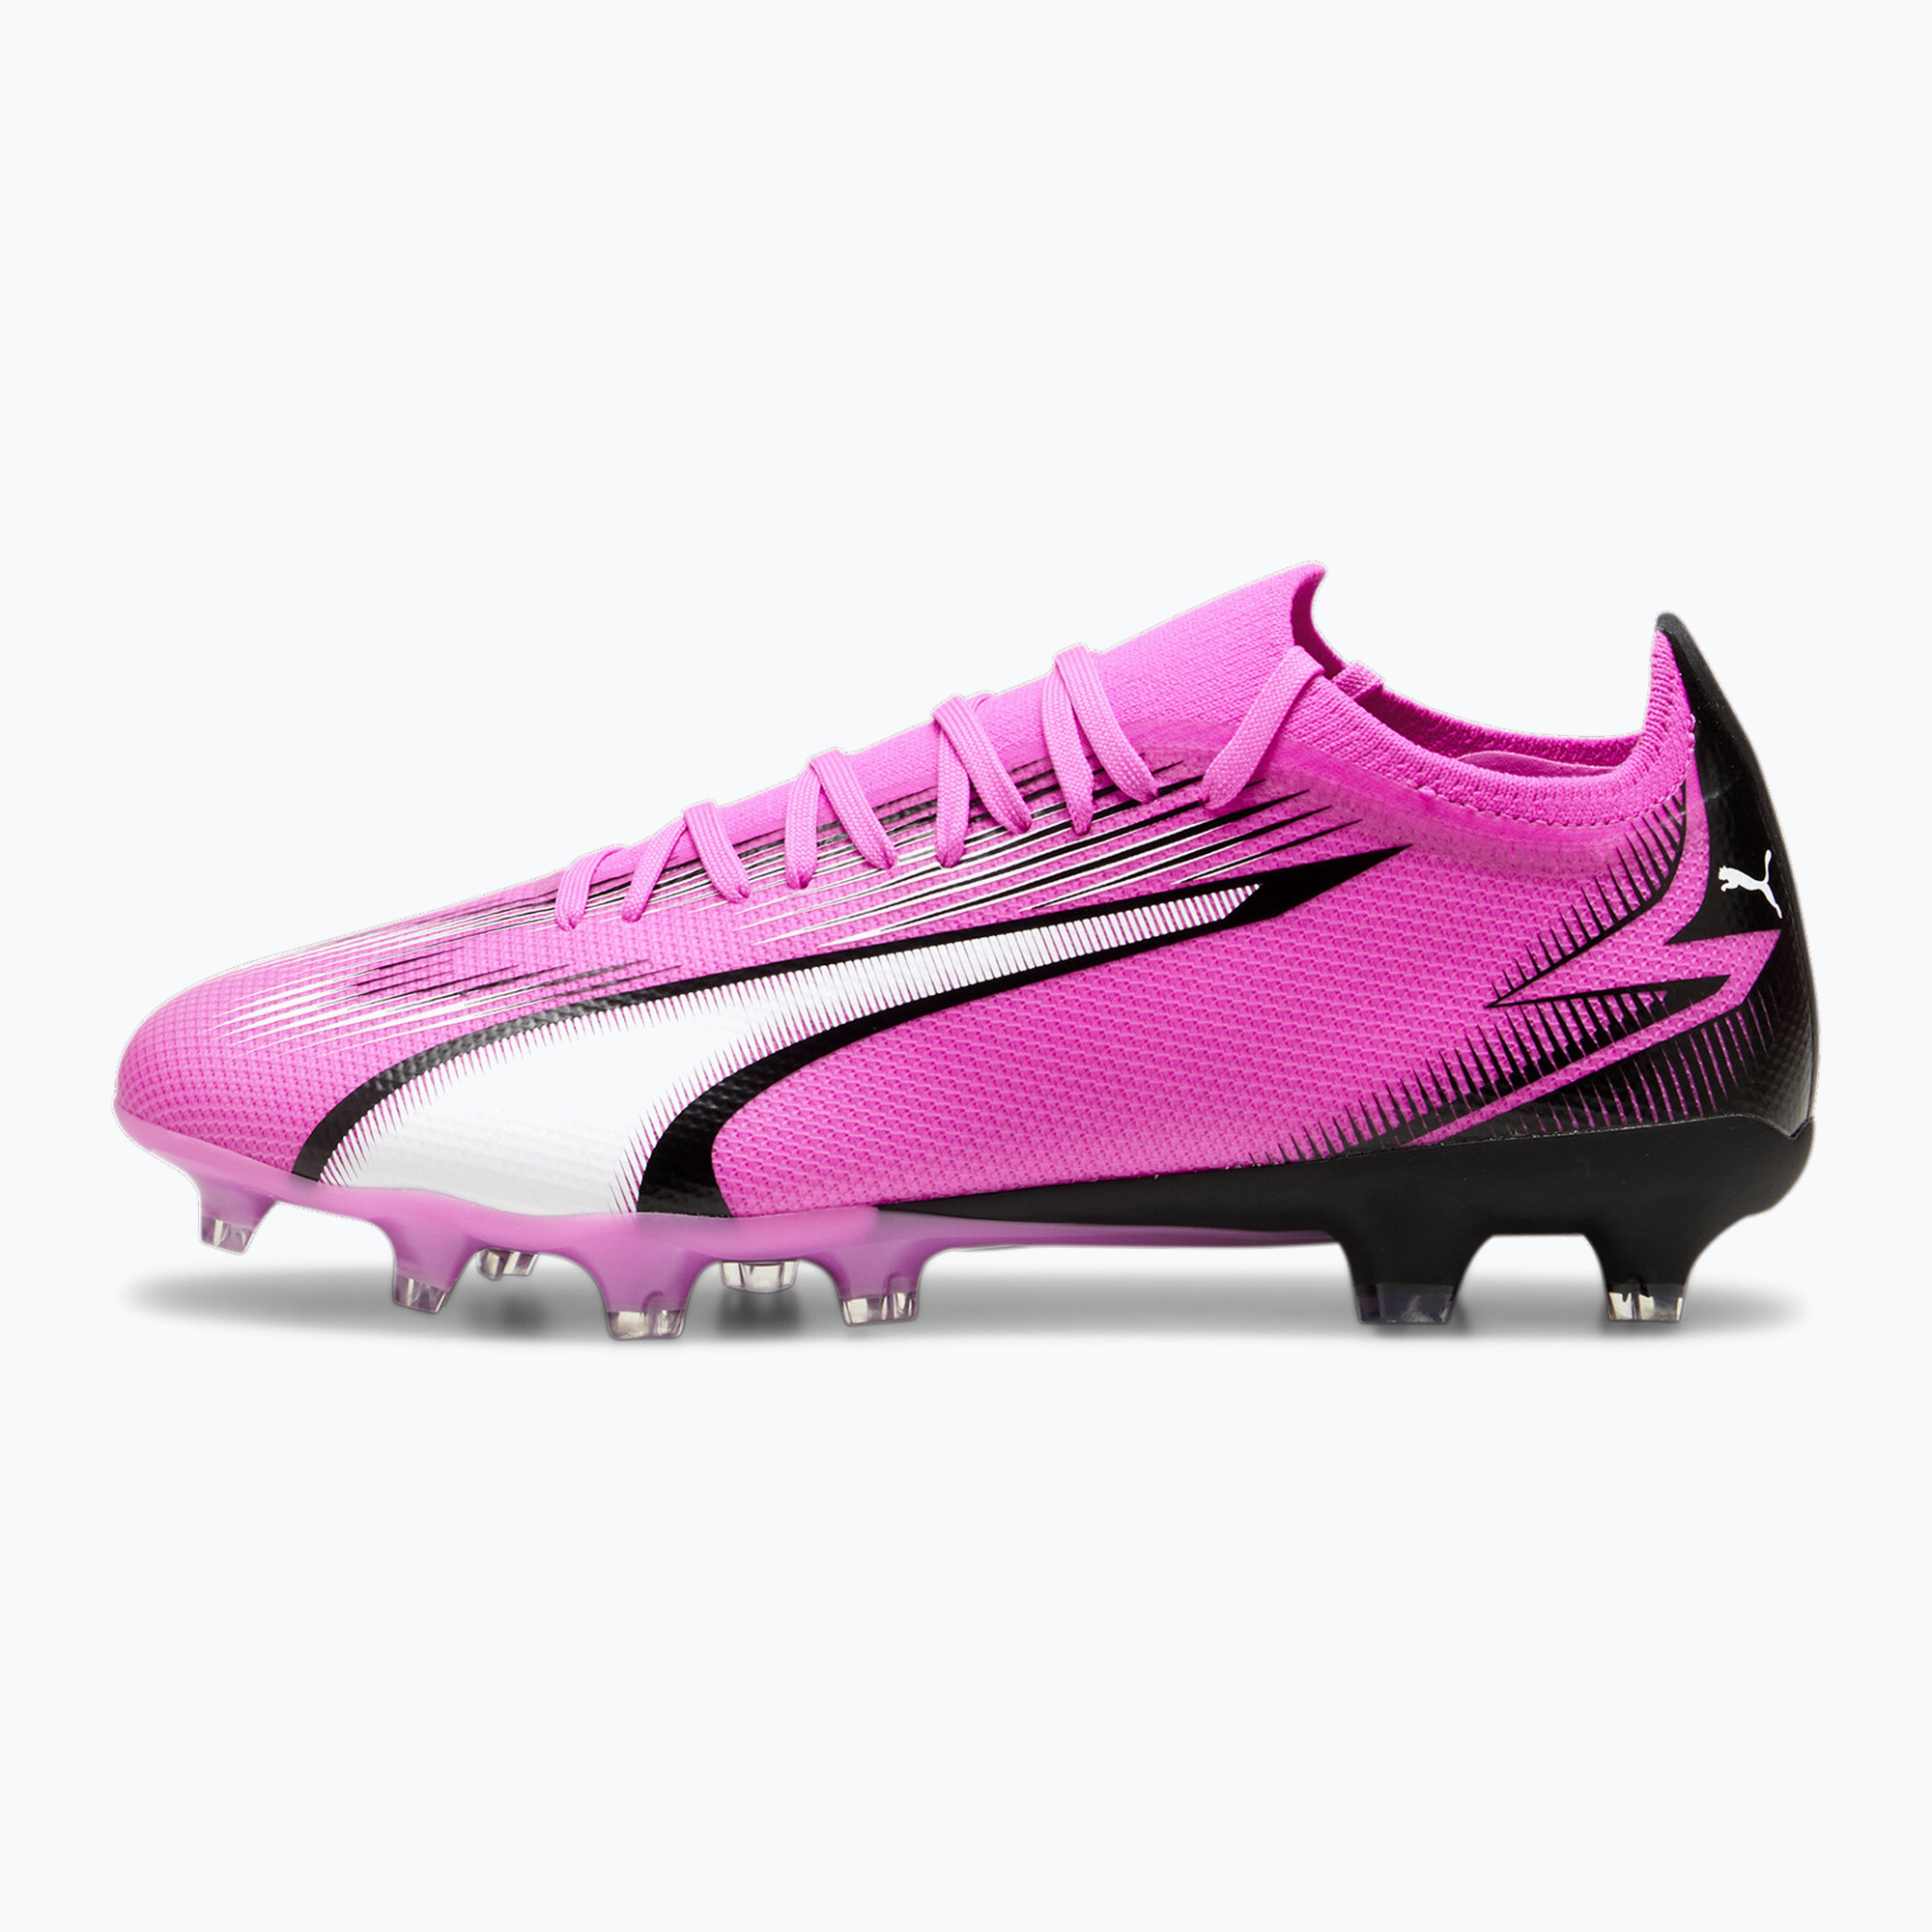 Футболни обувки PUMA Ultra Match FG/AG отровно розово/пума бяло/пума черно